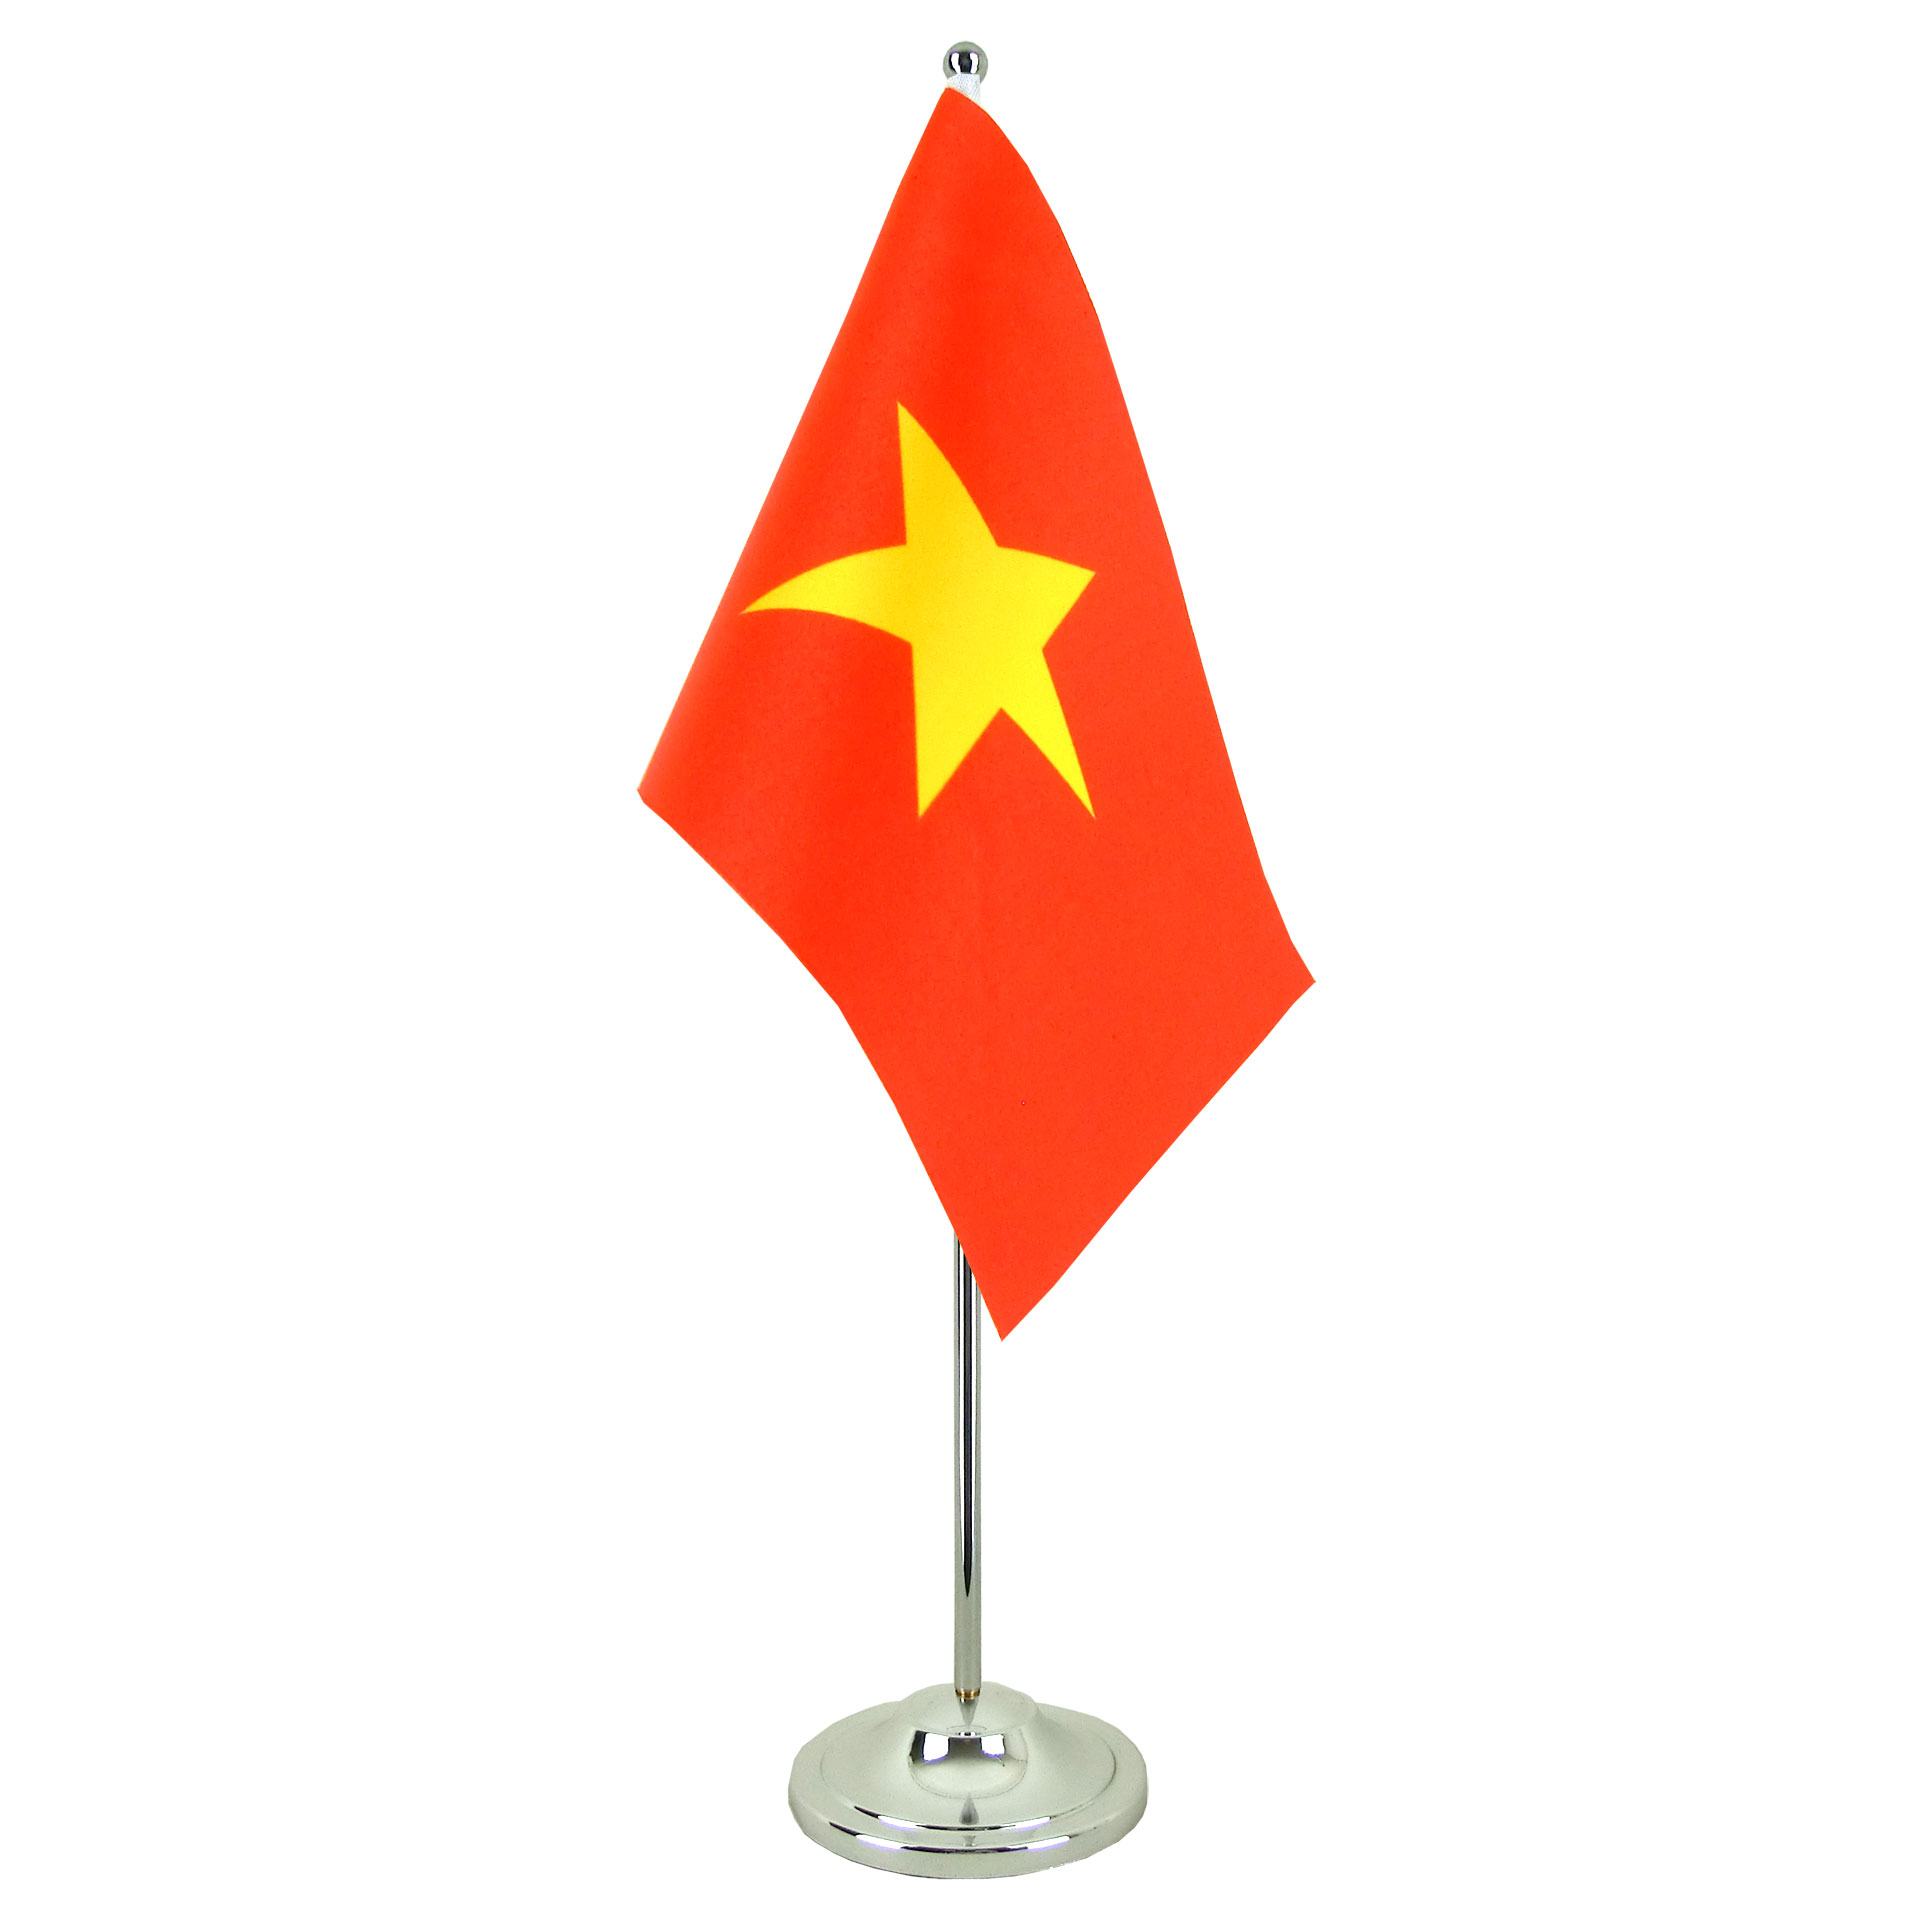 Hình ảnh lá cờ Việt Nam trên bàn